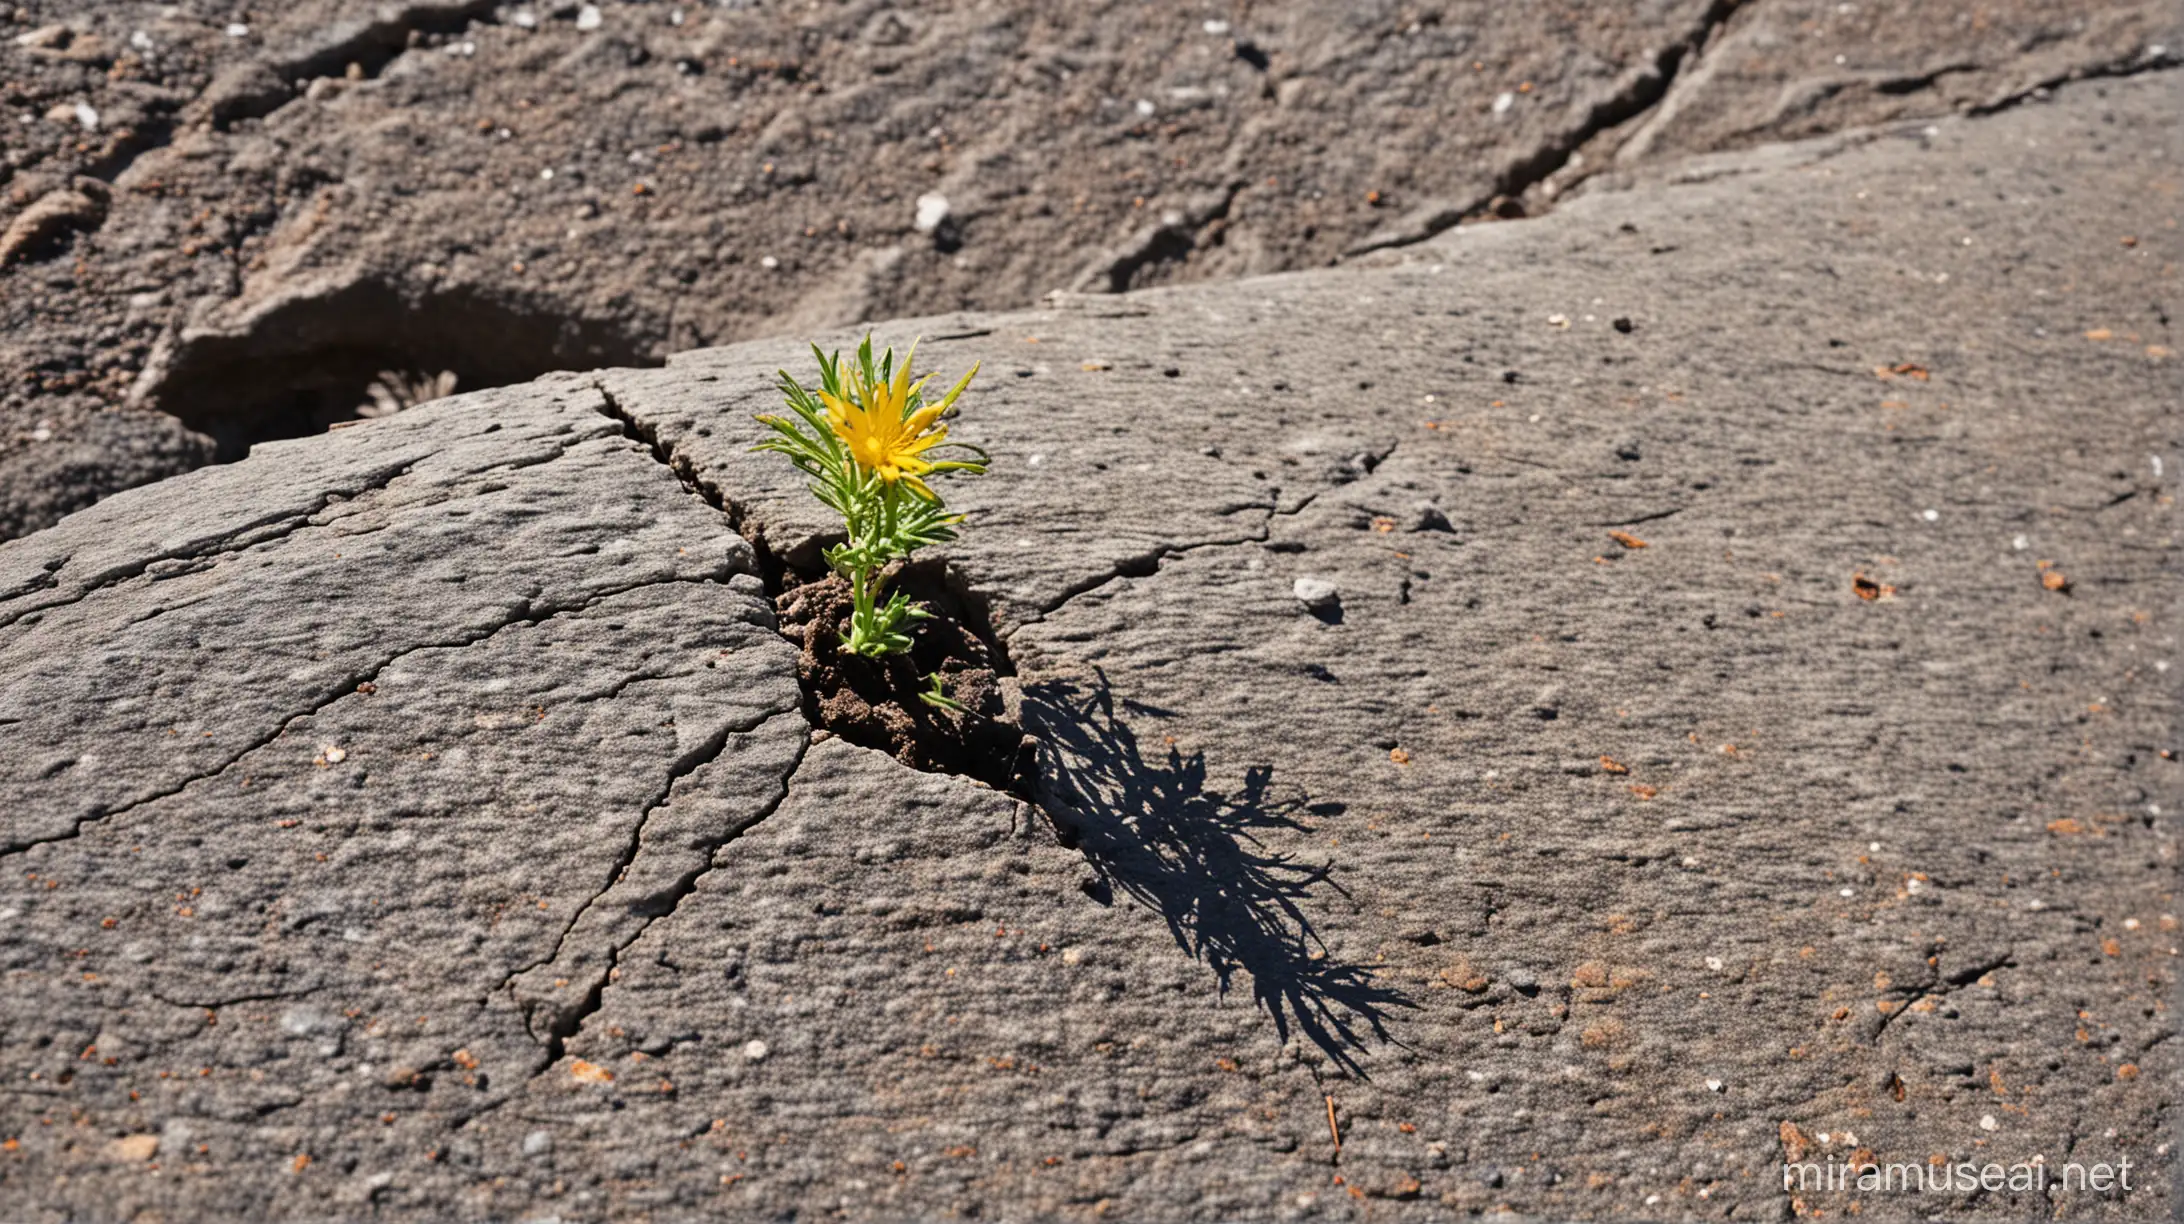 Una semilla caída en la grieta de una roca que lucha por crecer contra todo pronóstico, que extiende sus raíces y busca la luz del sol, floreciendo en el lugar menos esperado. 